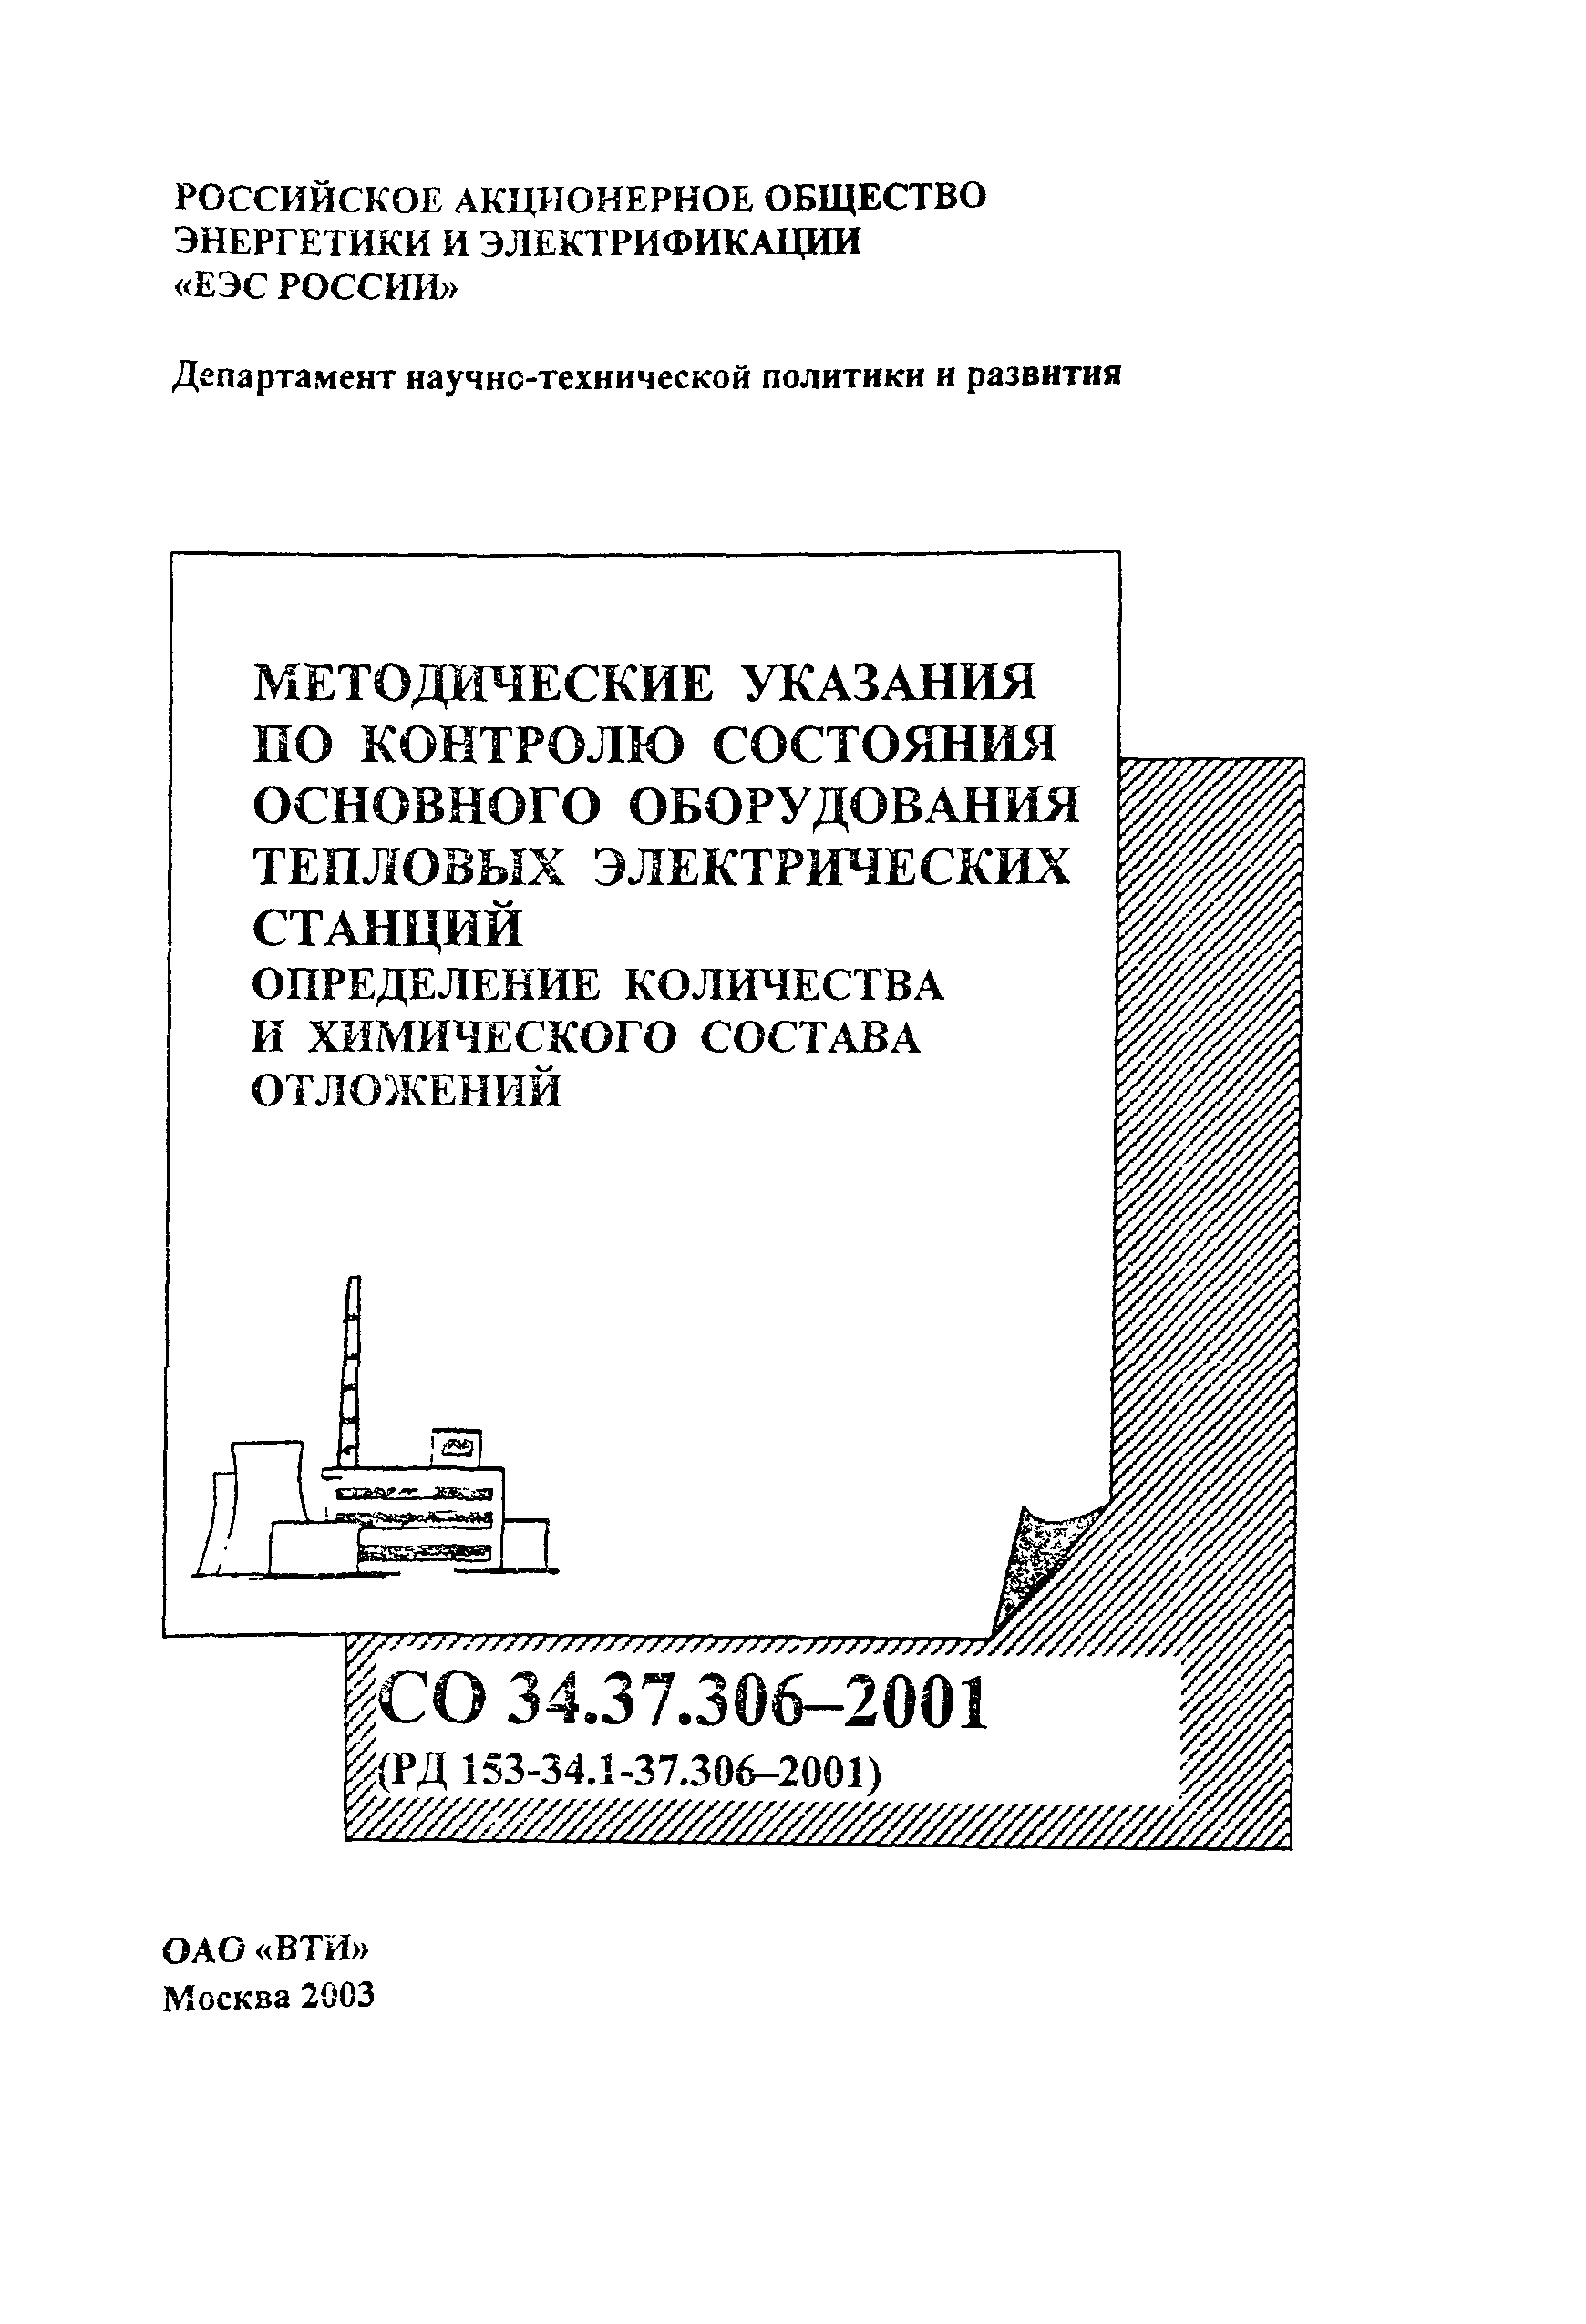 РД 153-34.1-37.306-2001